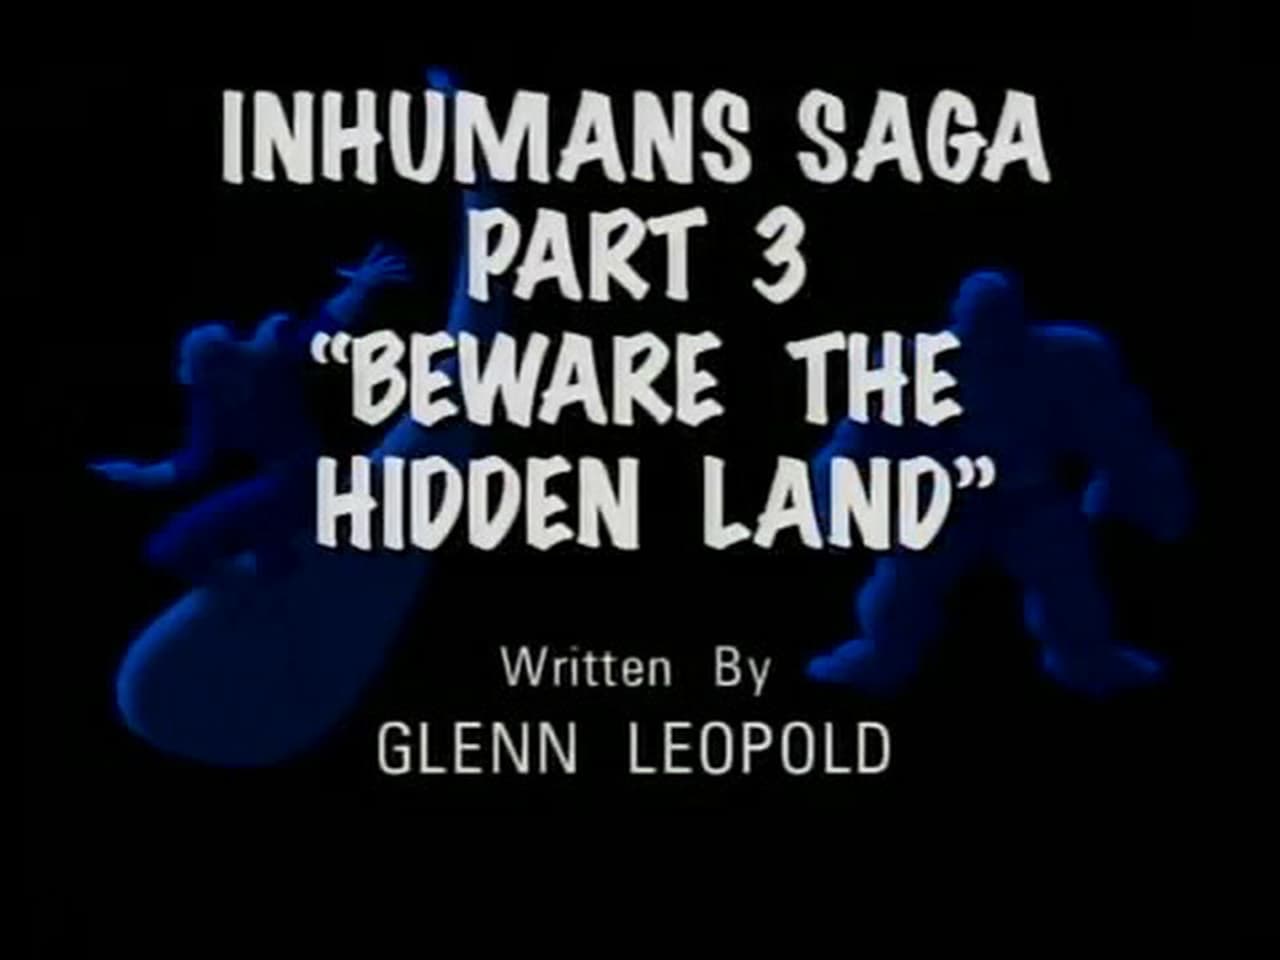 Inhumans Saga Part 3 Beware the Hidden Land